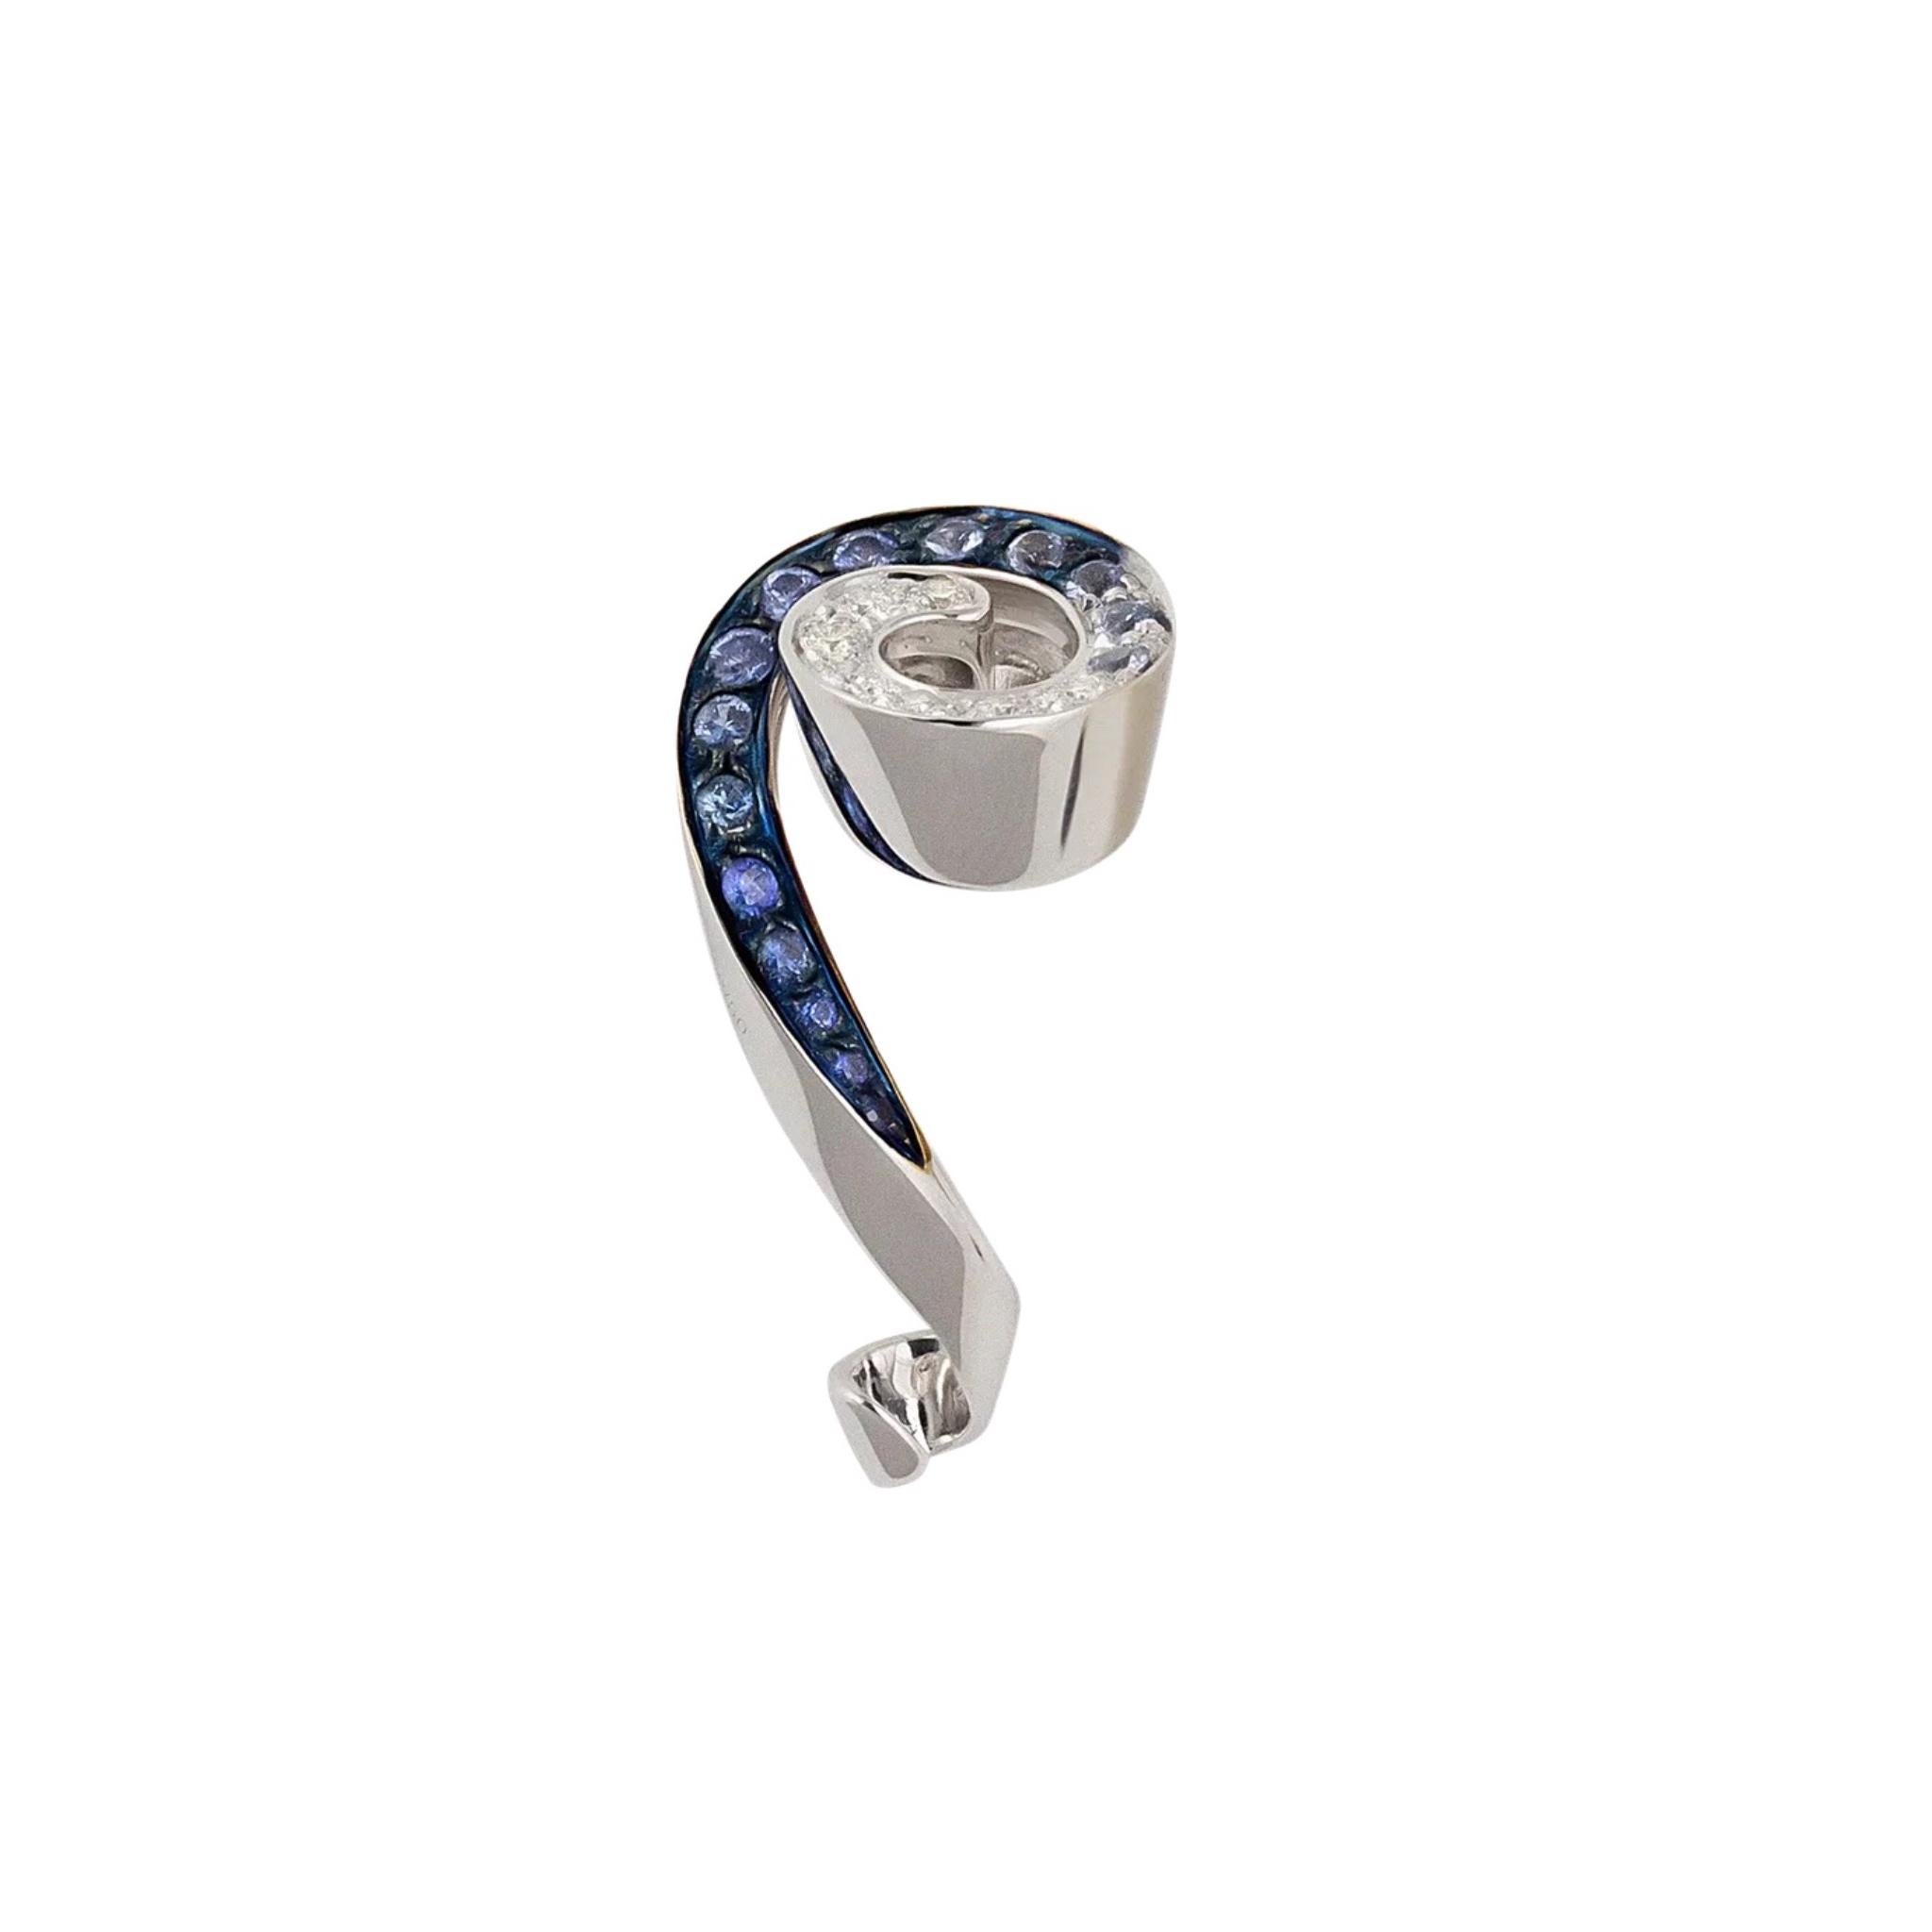 IO SI 18K White Gold Diamond & Sapphire Earrings
Diamond: 0.35ctw
Sapphire: 0.75ctw
SKU: BLU01980
Retail price: $12,870.00